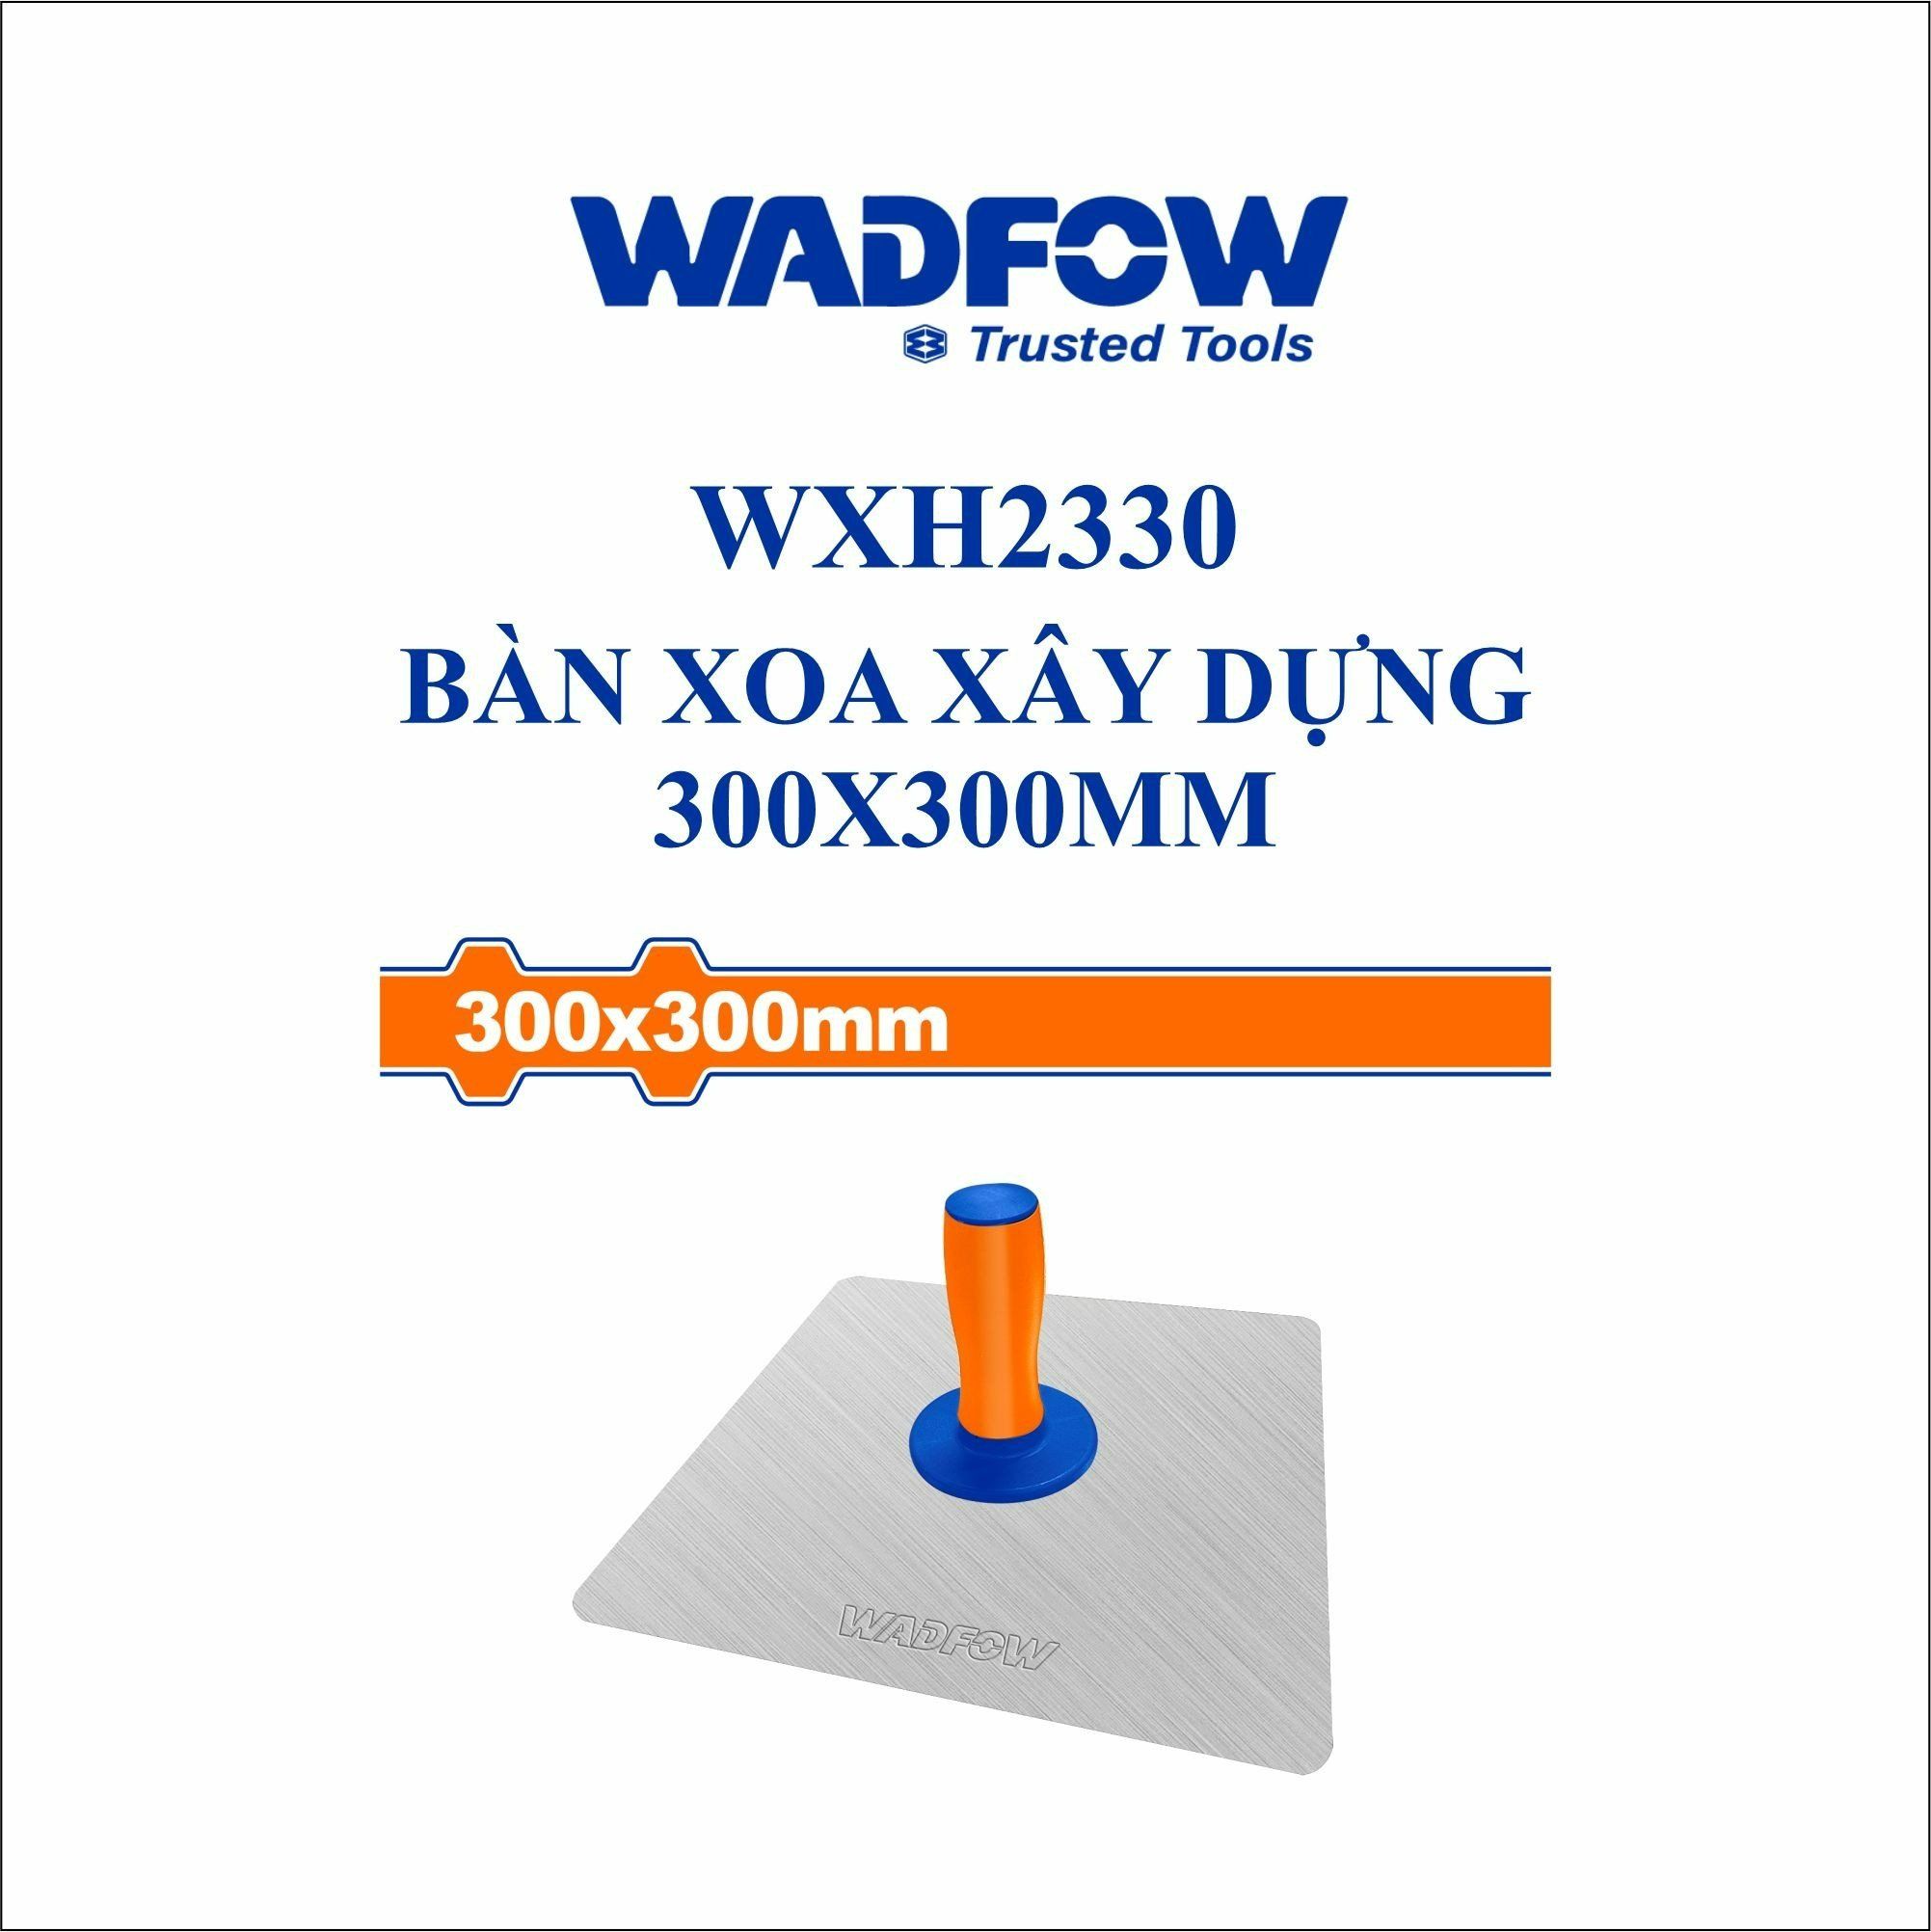  Bàn xoa xây dựng 300x300mm WADFOW WXH2330 